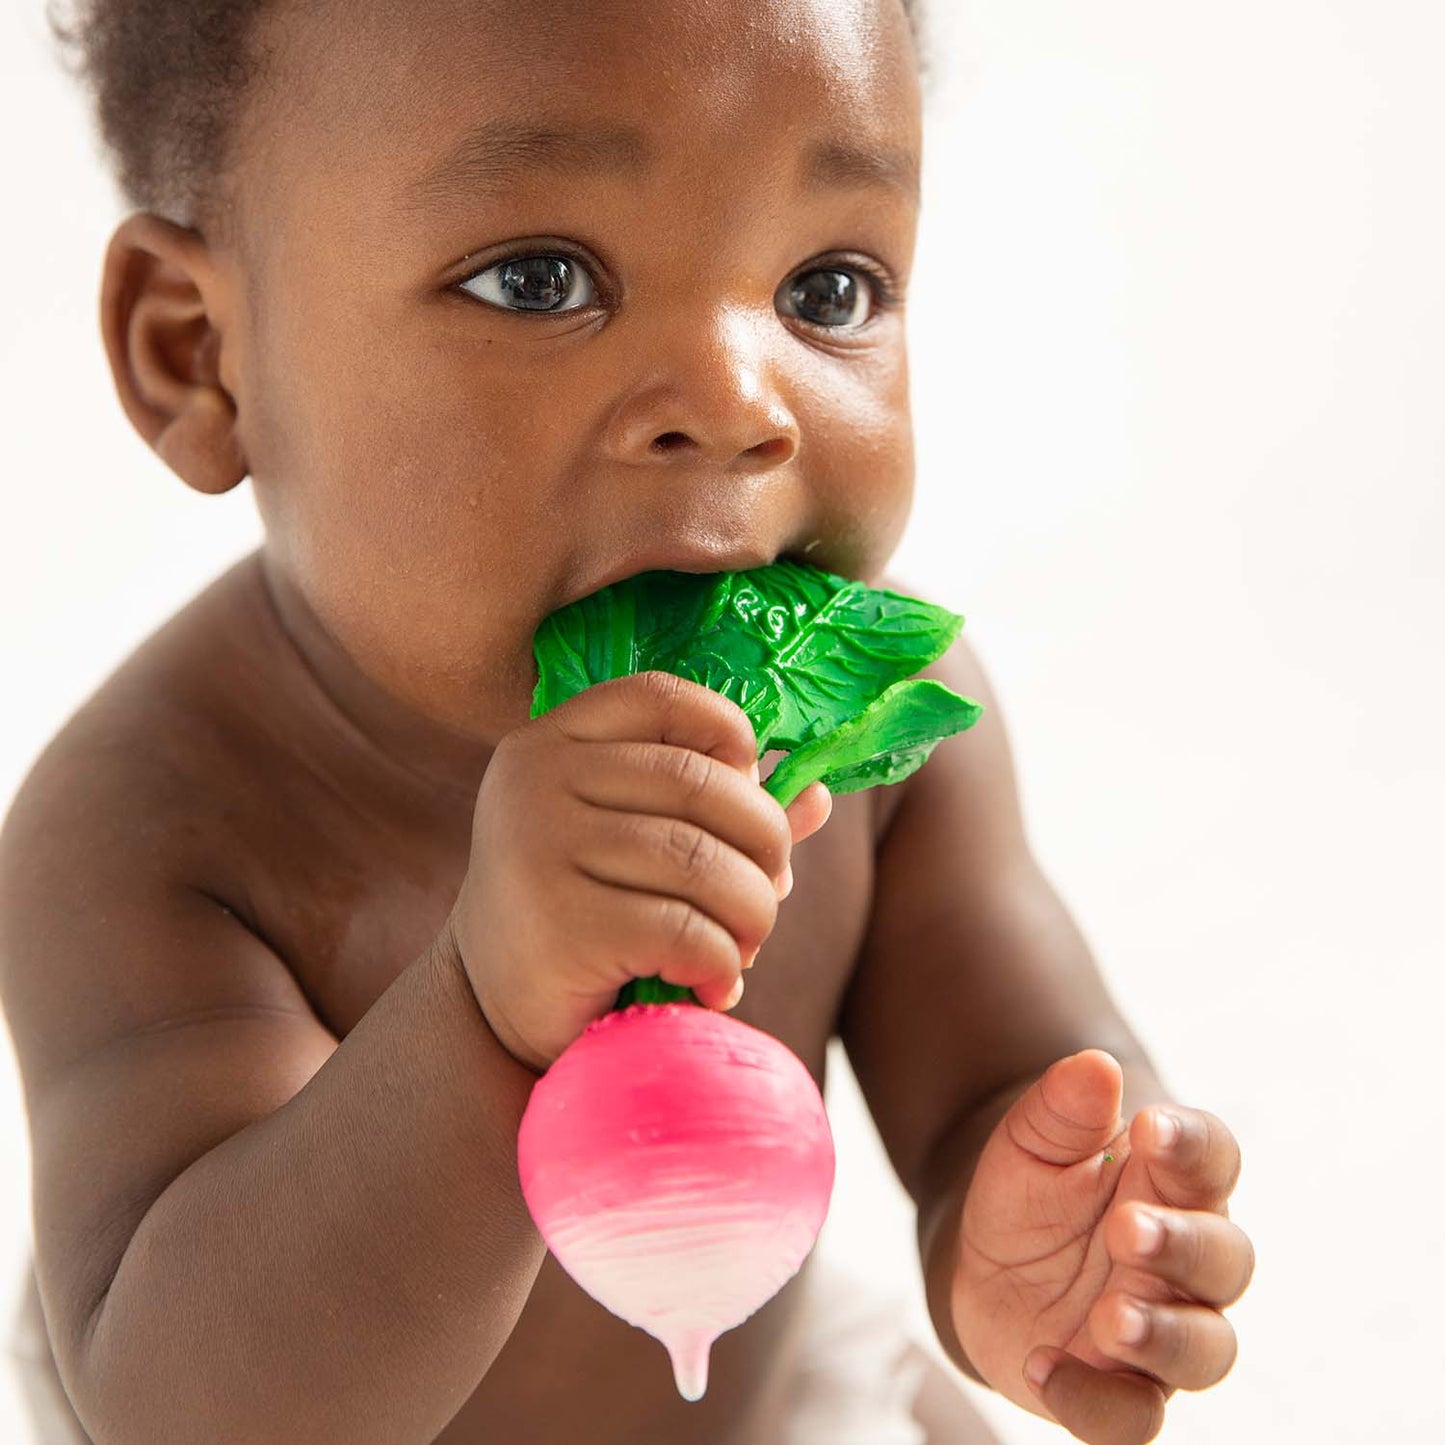 Photo of baby teething on radish-shaped baby toy.